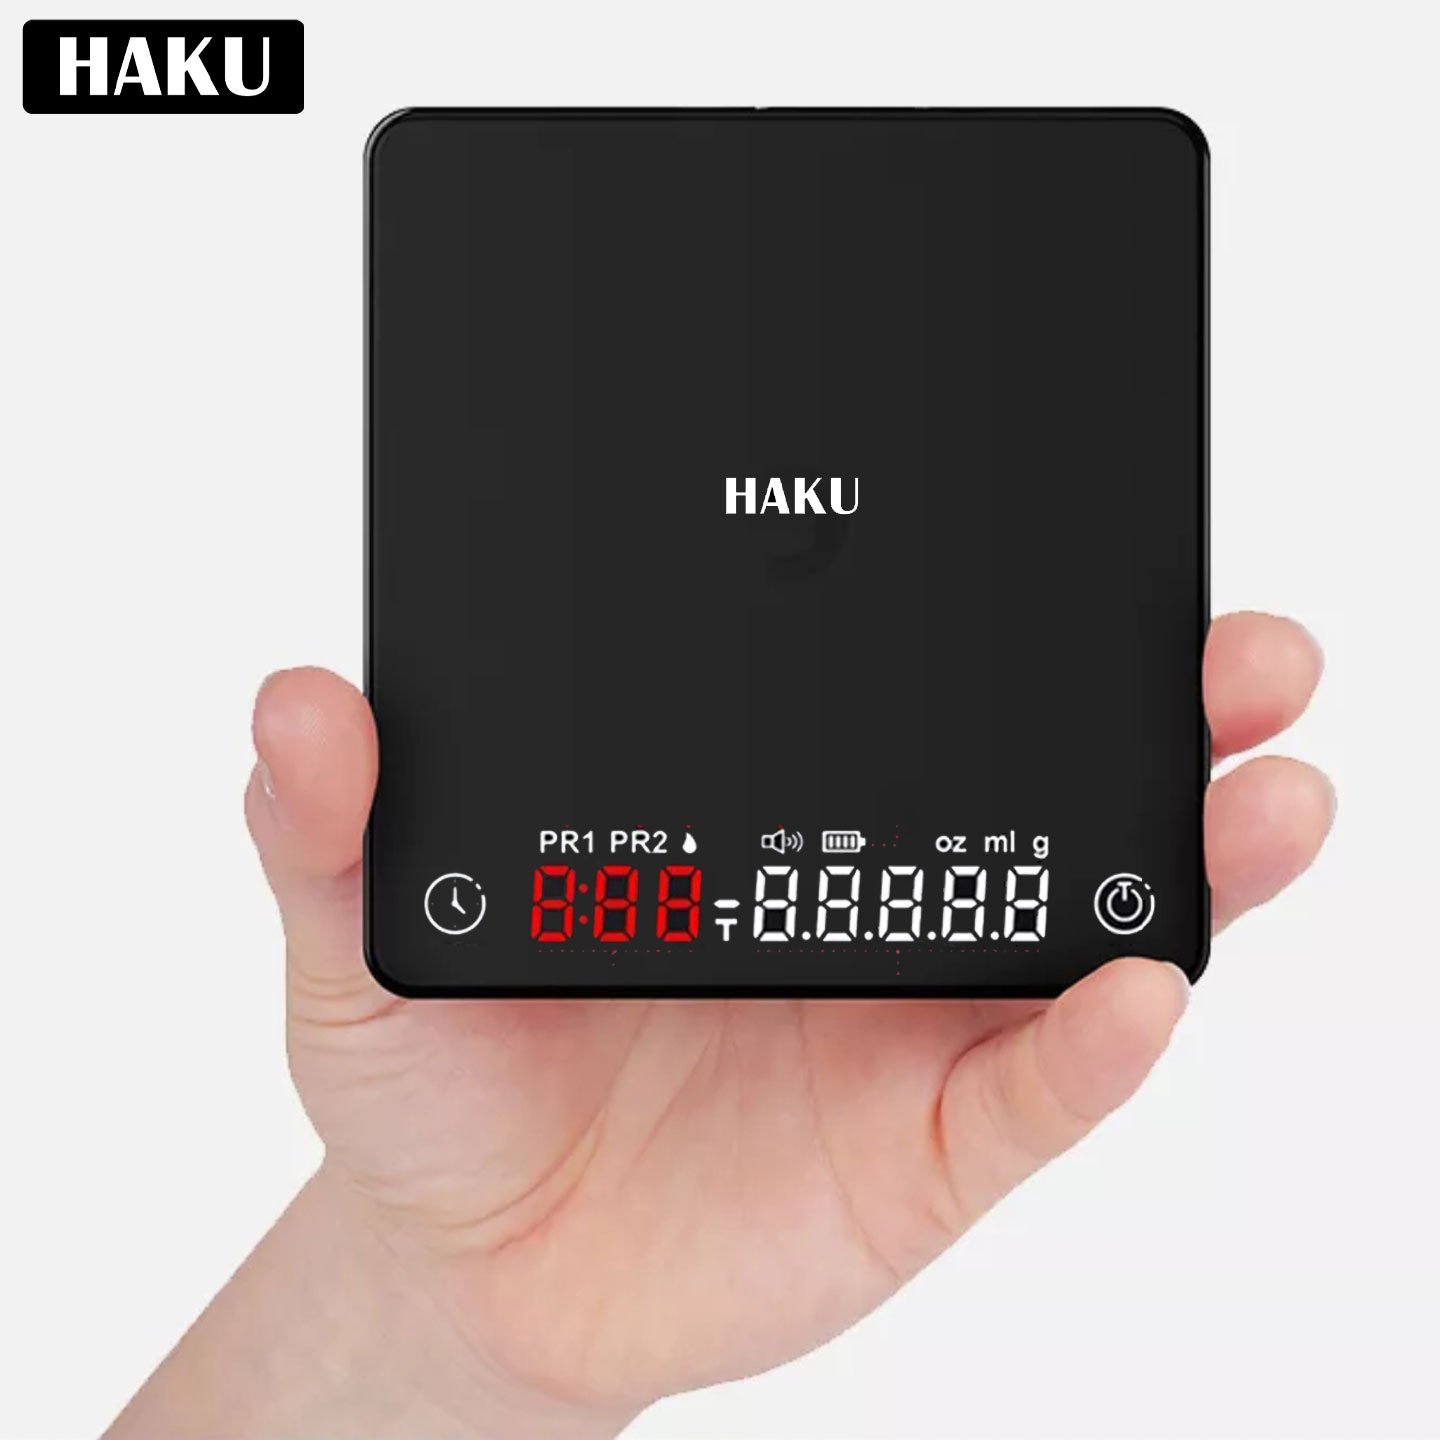 เครื่องชั่งดิจิตอล HAKU - Automatic Mini Scale